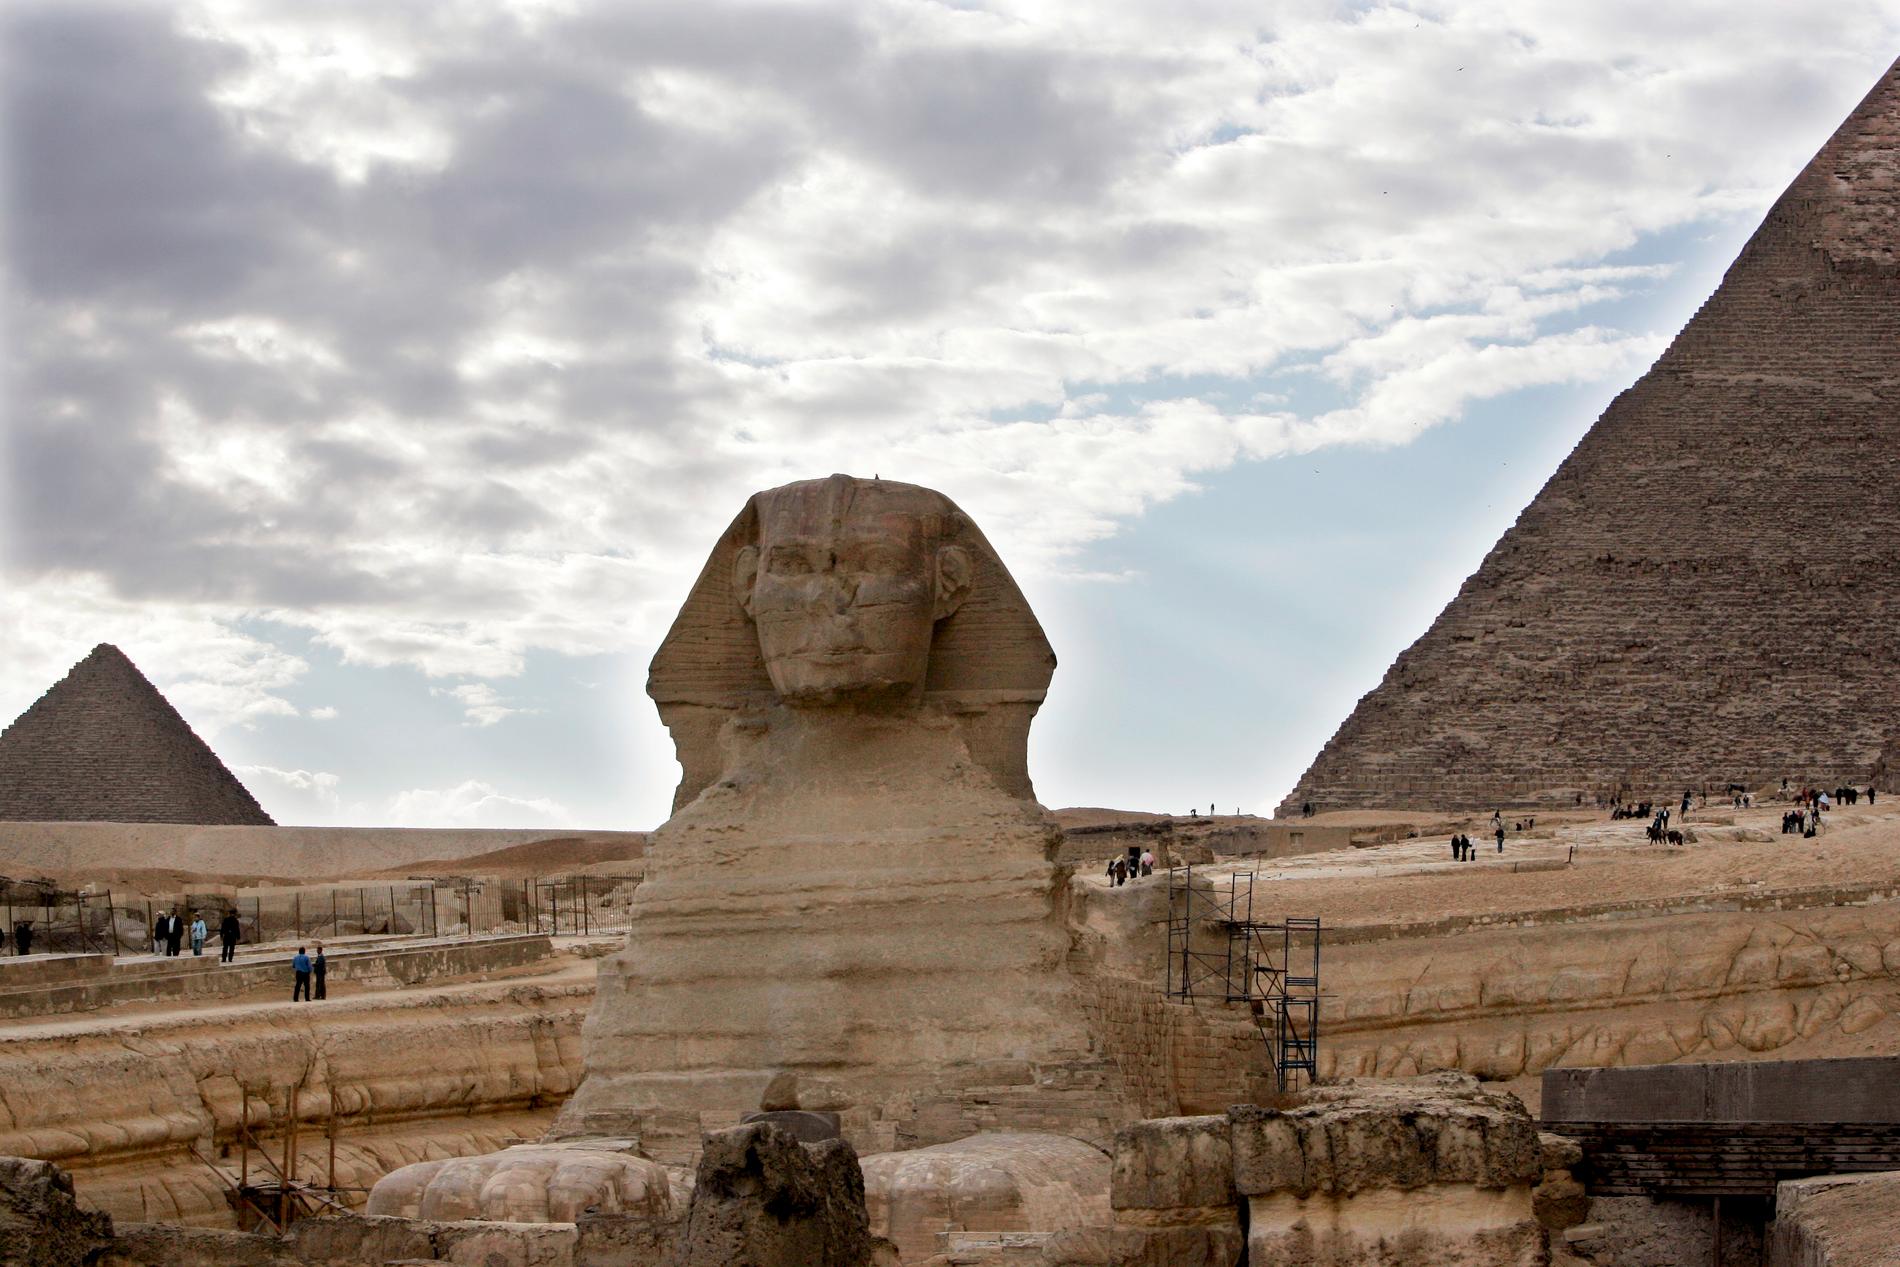 Några av de mest kända kvarlevorna från det forna Egypten är pyramiderna och sfinxen i Giza utanför Kairo